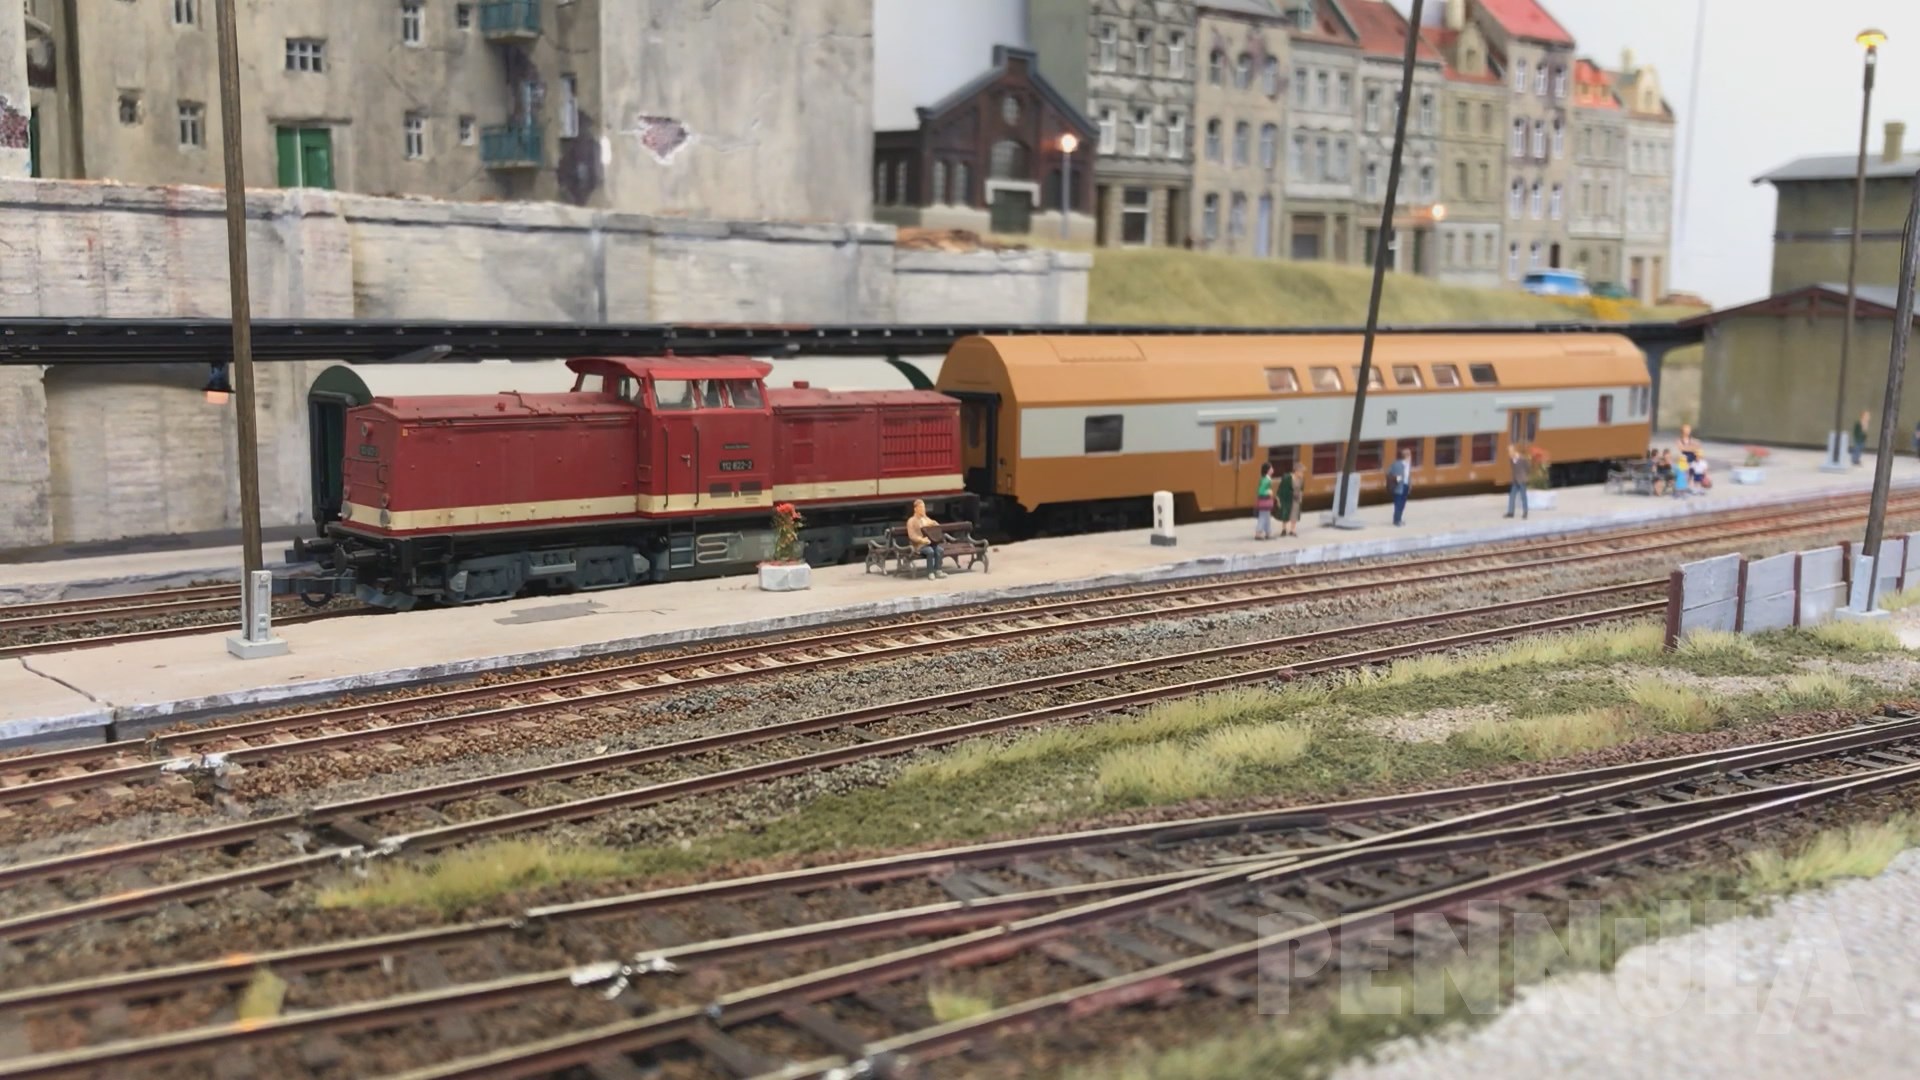 DDR Piko Modellbahn mit Lokomotiven und Modellzügen der Deutschen Reichsbahn